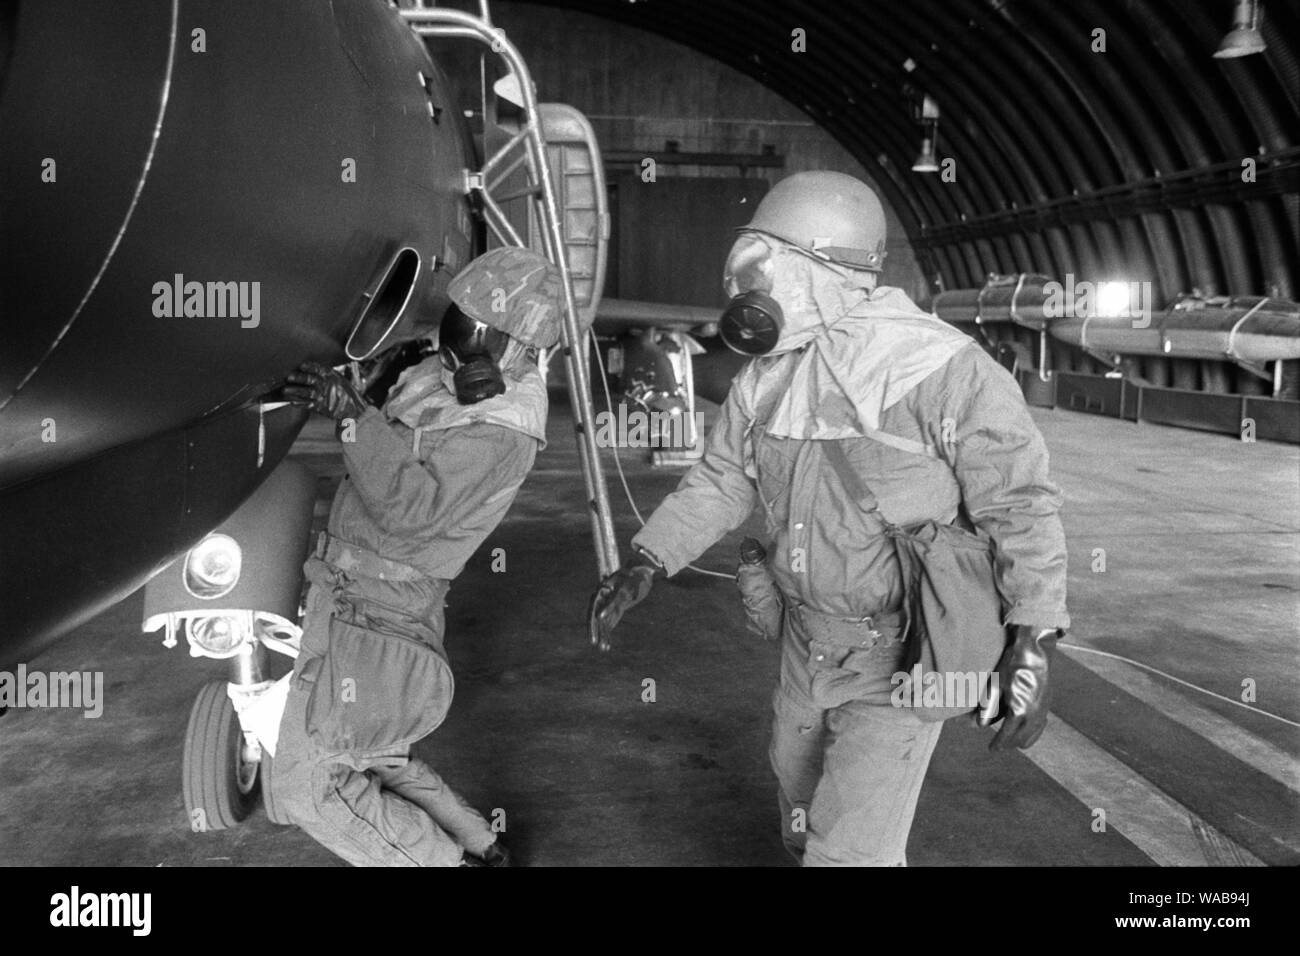 Spangdahlem, U.S. Air Force air base (Allemagne de l'Ouest)), siège ot 52d Tactical Fighter Wing. Les membres du personnel technique au sol au cours d'un exercice NBC (Juin 1985) Banque D'Images